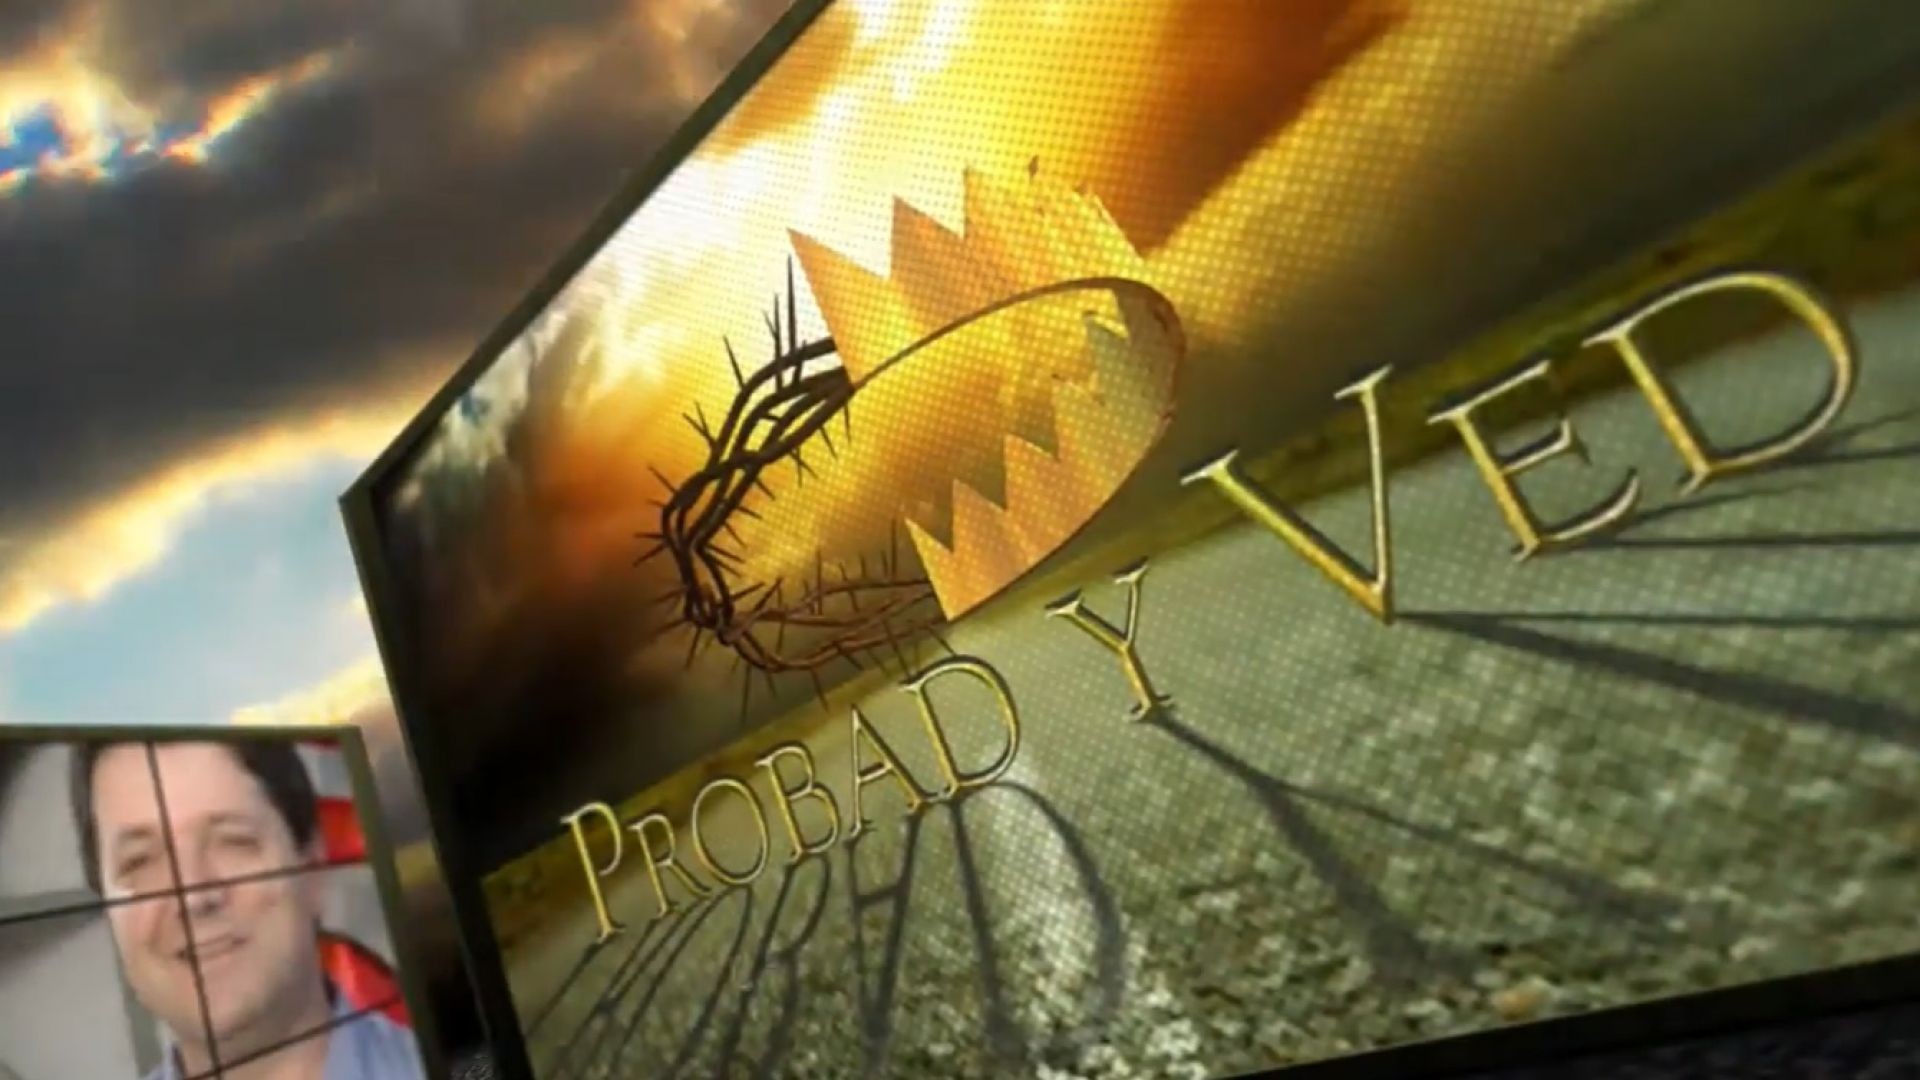 Probad y Ved 2012 - Creciendo con Dios